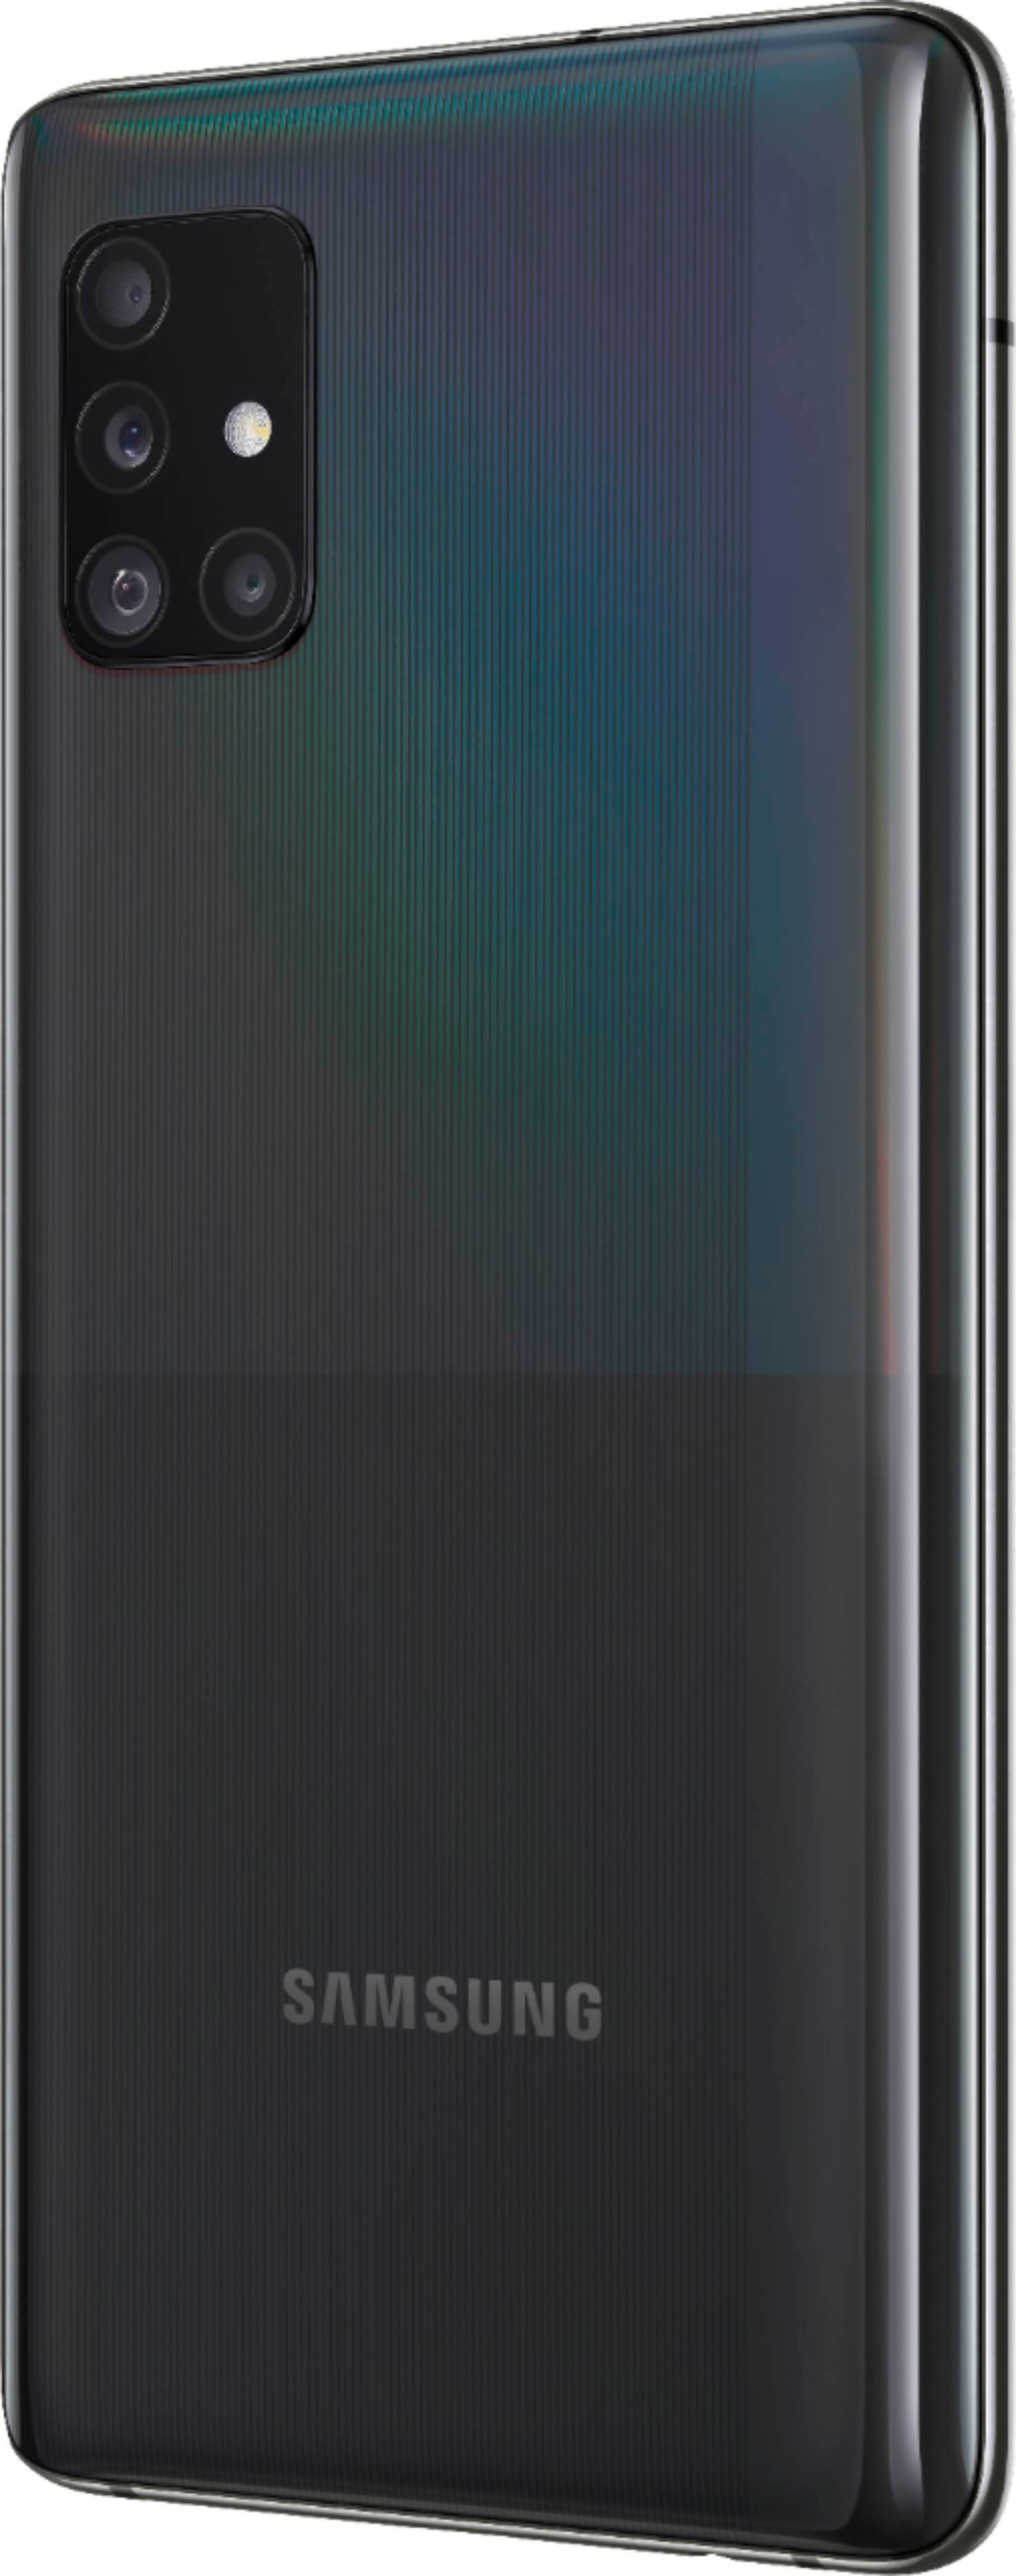 Samsung Galaxy A51 5G 128GB Prism Cube Black (AT&T) SM-A516U 